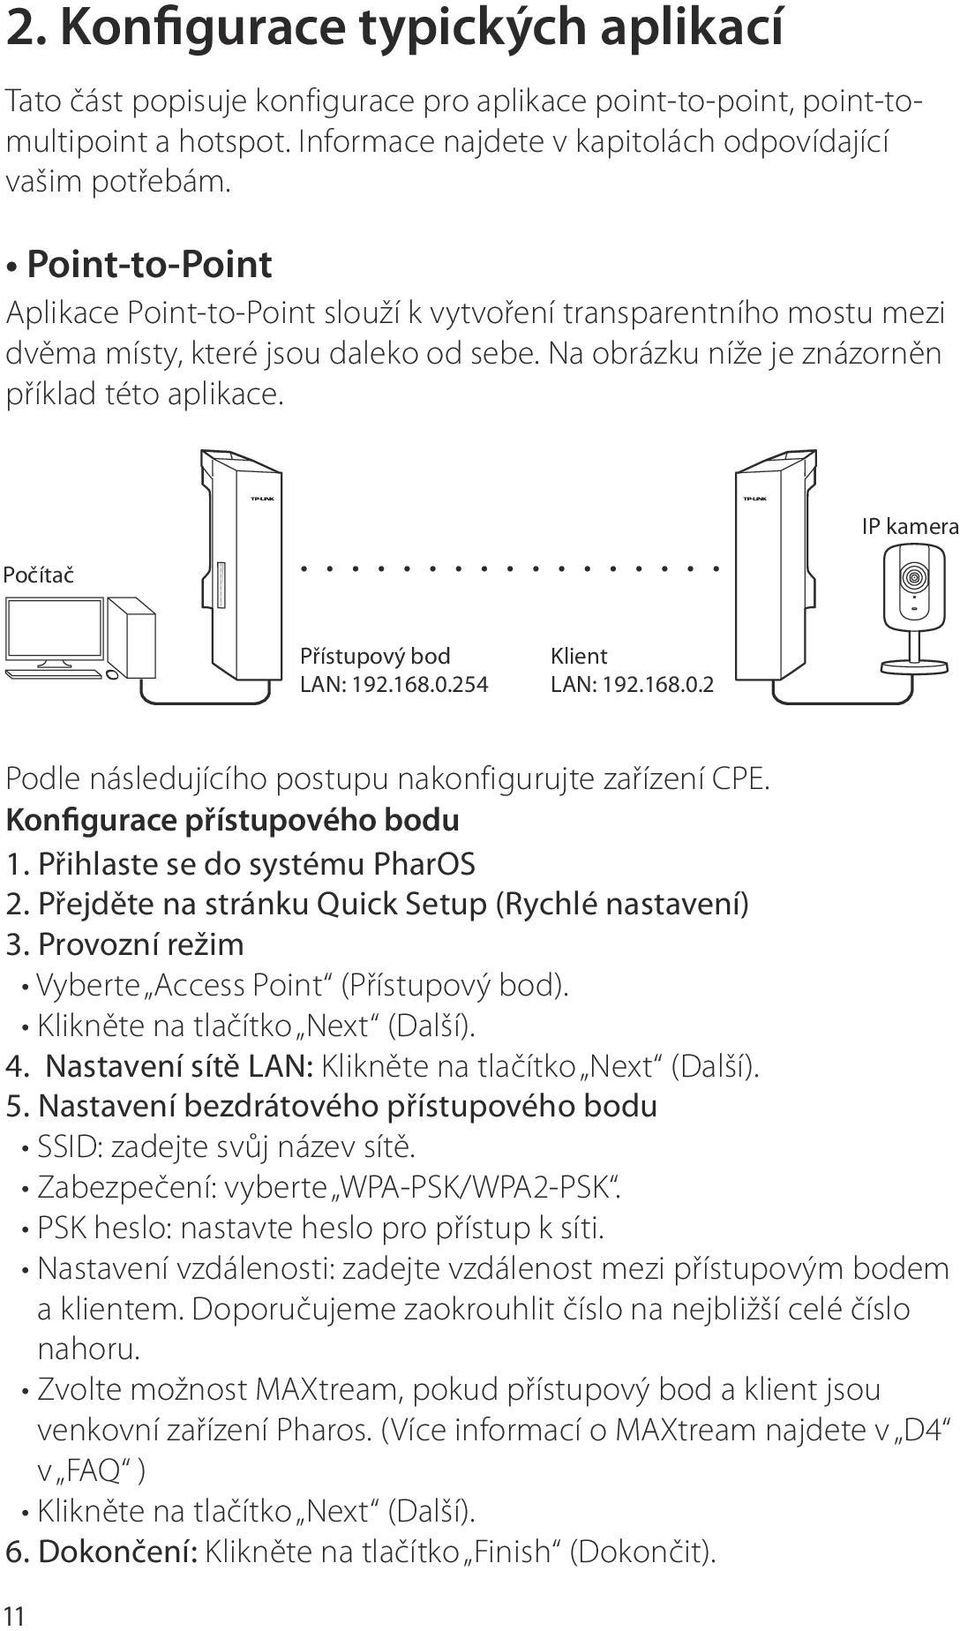 Počítač IP kamera Přístupový bod LAN: 192.168.0.254 Klient LAN: 192.168.0.2 Podle následujícího postupu nakonfigurujte zařízení CPE. Konfigurace přístupového bodu 1. Přihlaste se do systému PharOS 2.